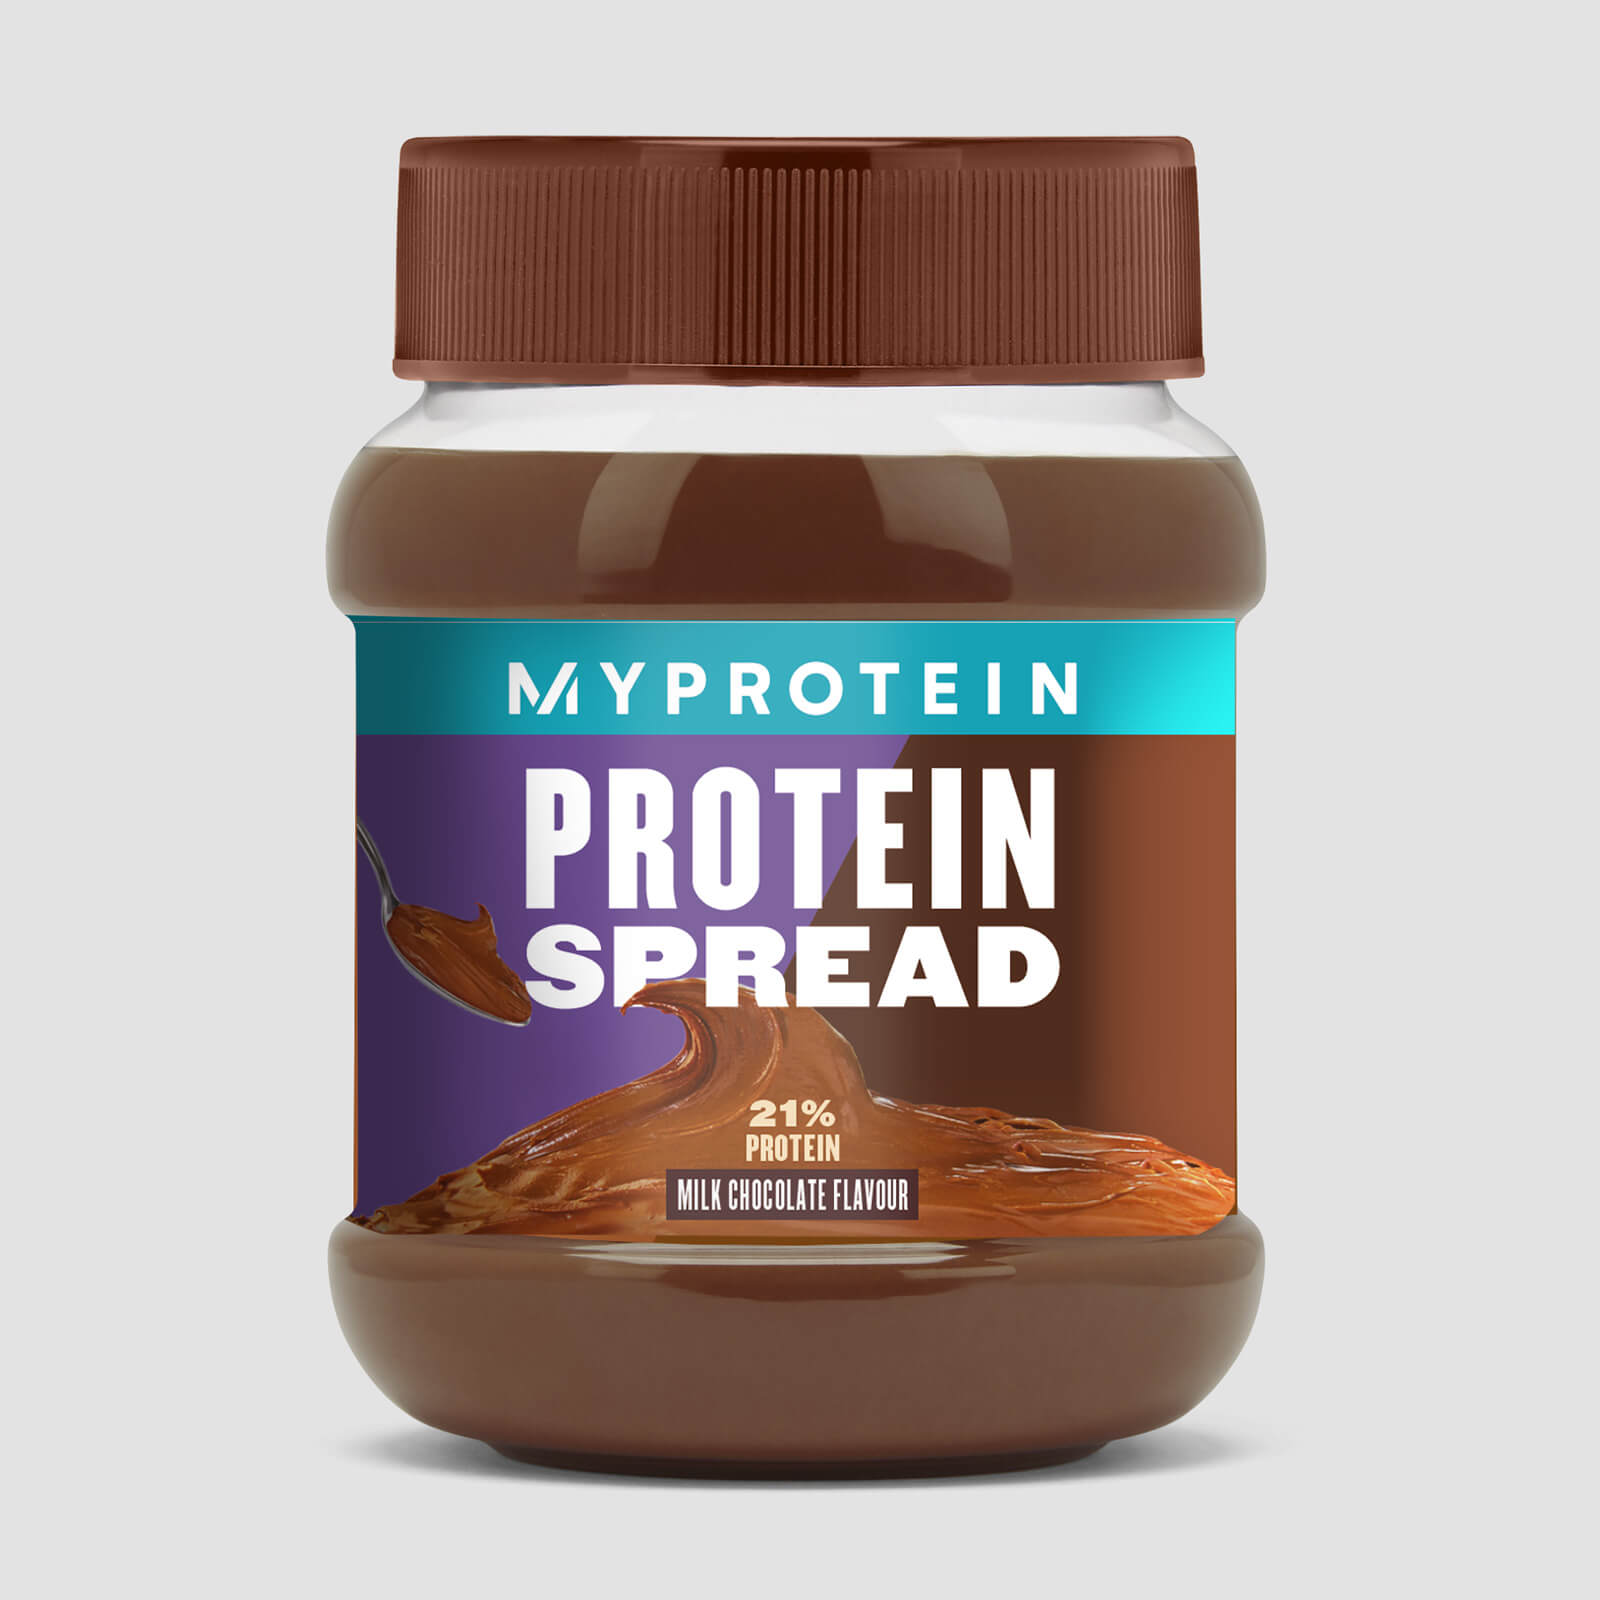 Myprotein Protein Spread